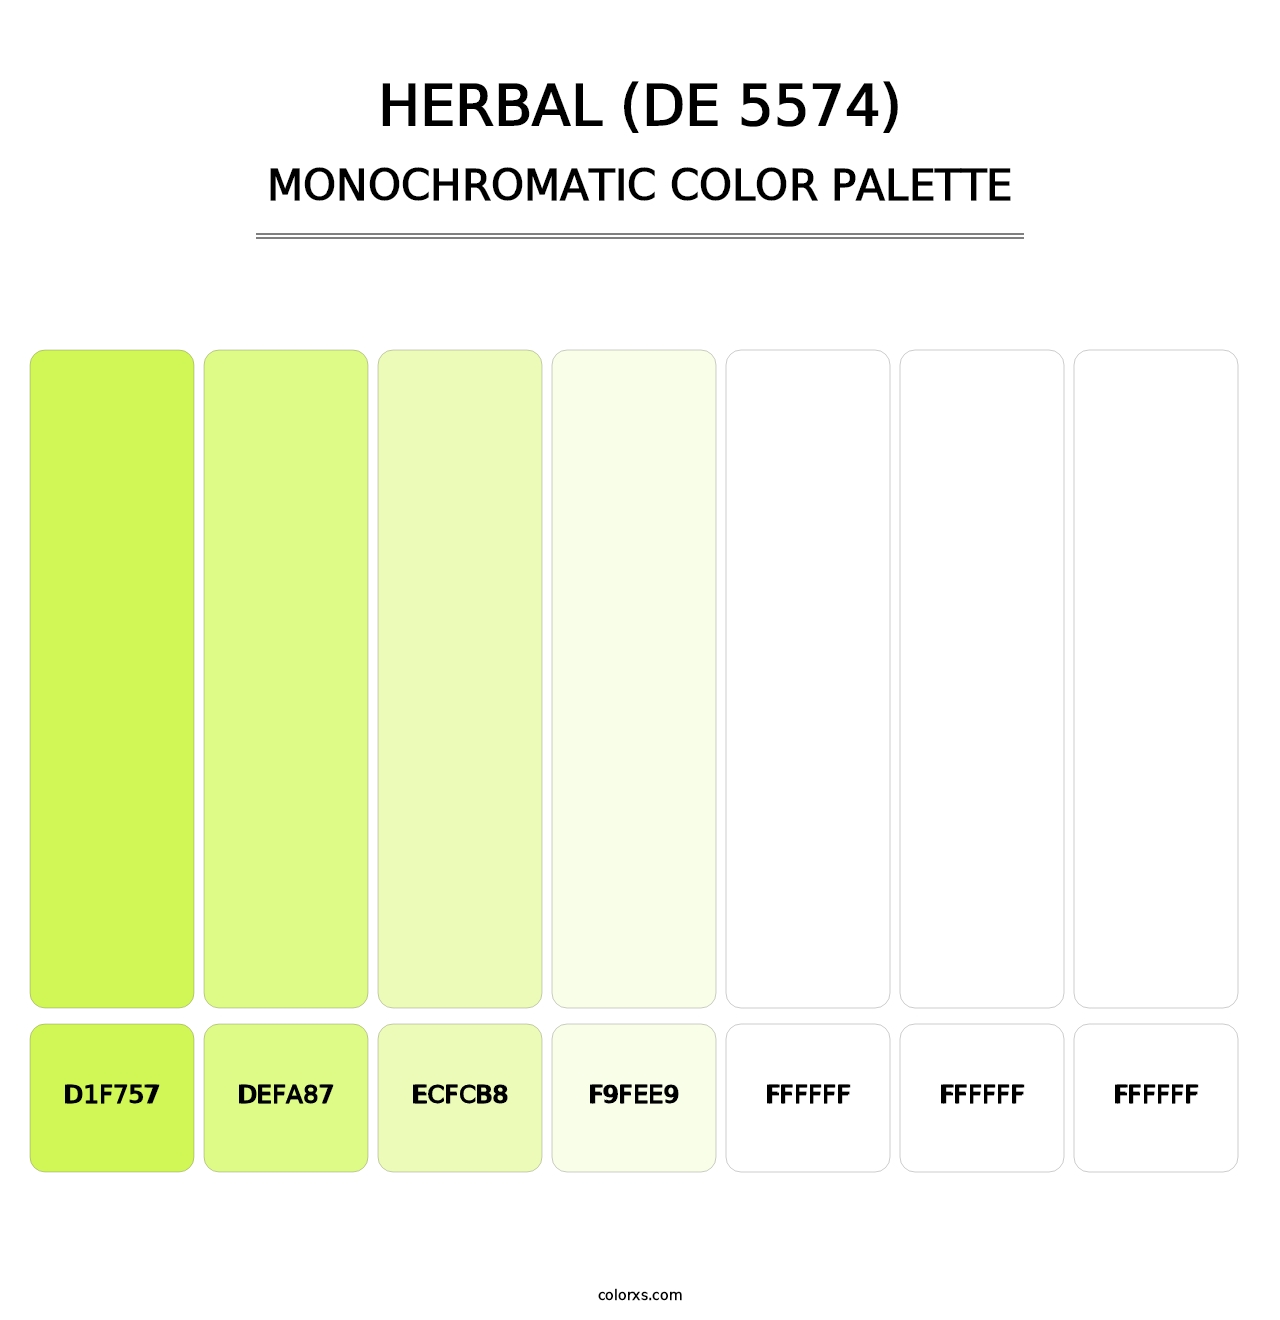 Herbal (DE 5574) - Monochromatic Color Palette